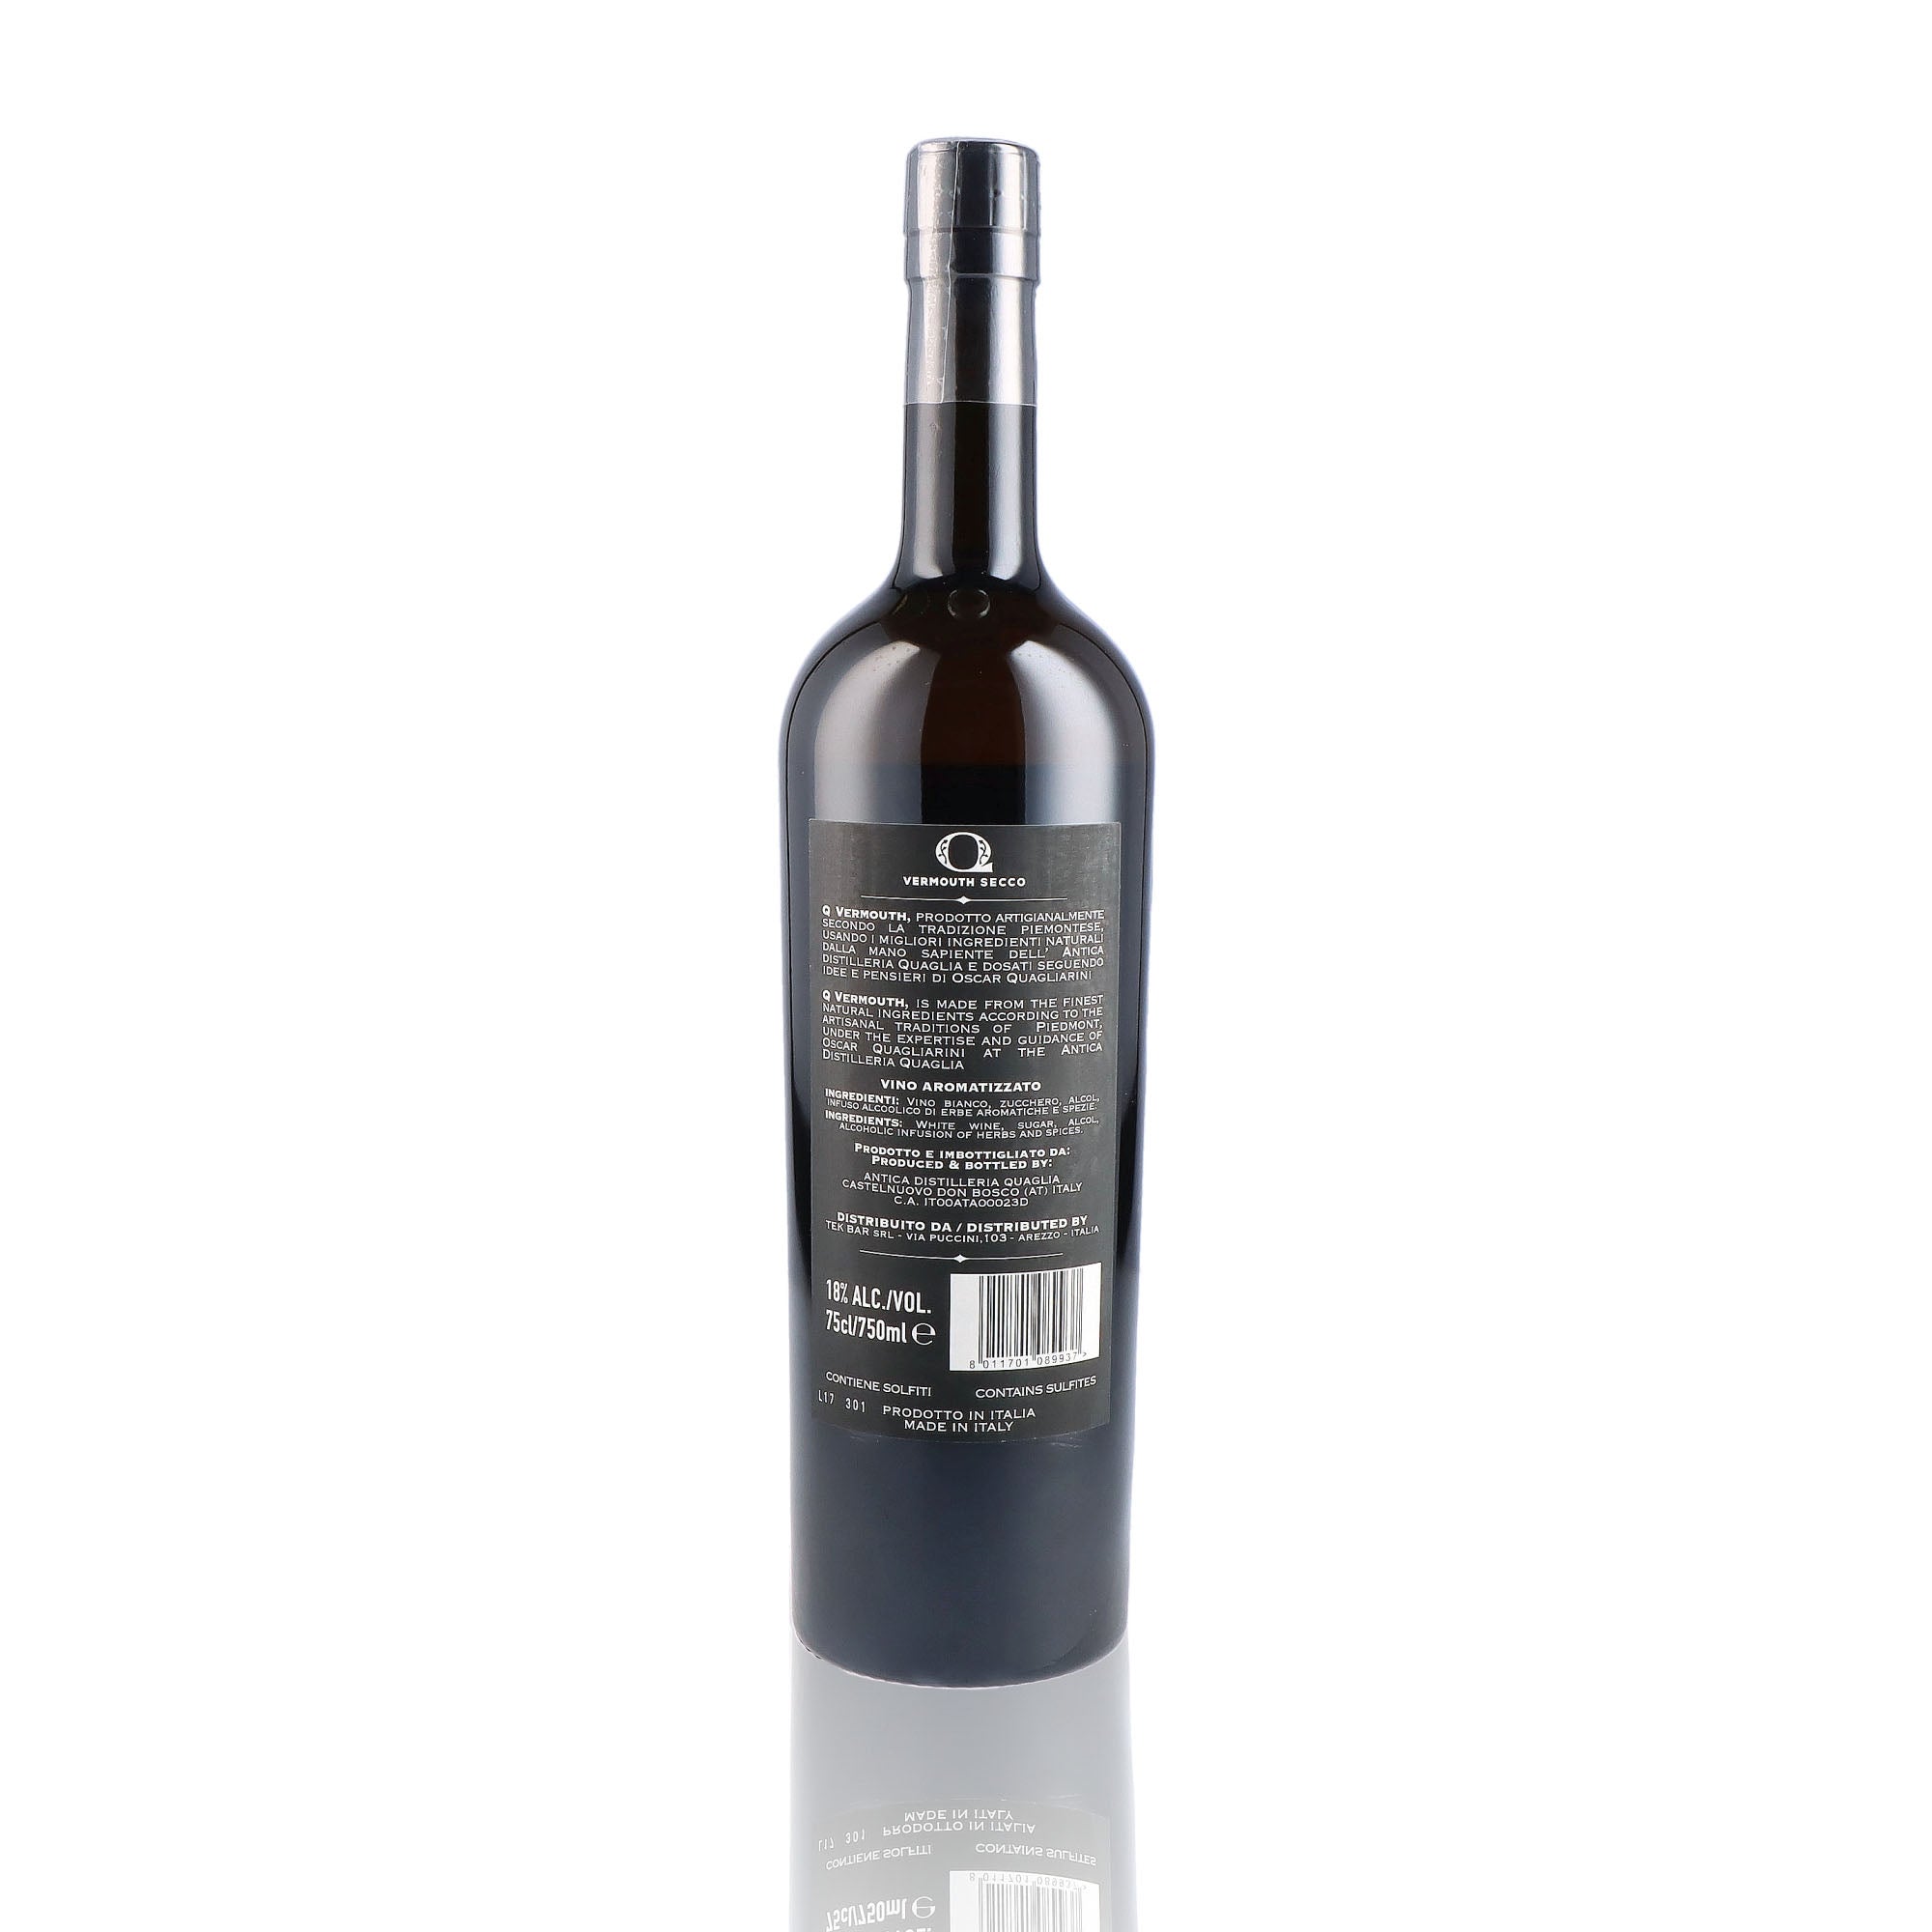 Une bouteille de vermouth, de la marque Quagliarini, nommée Secco.